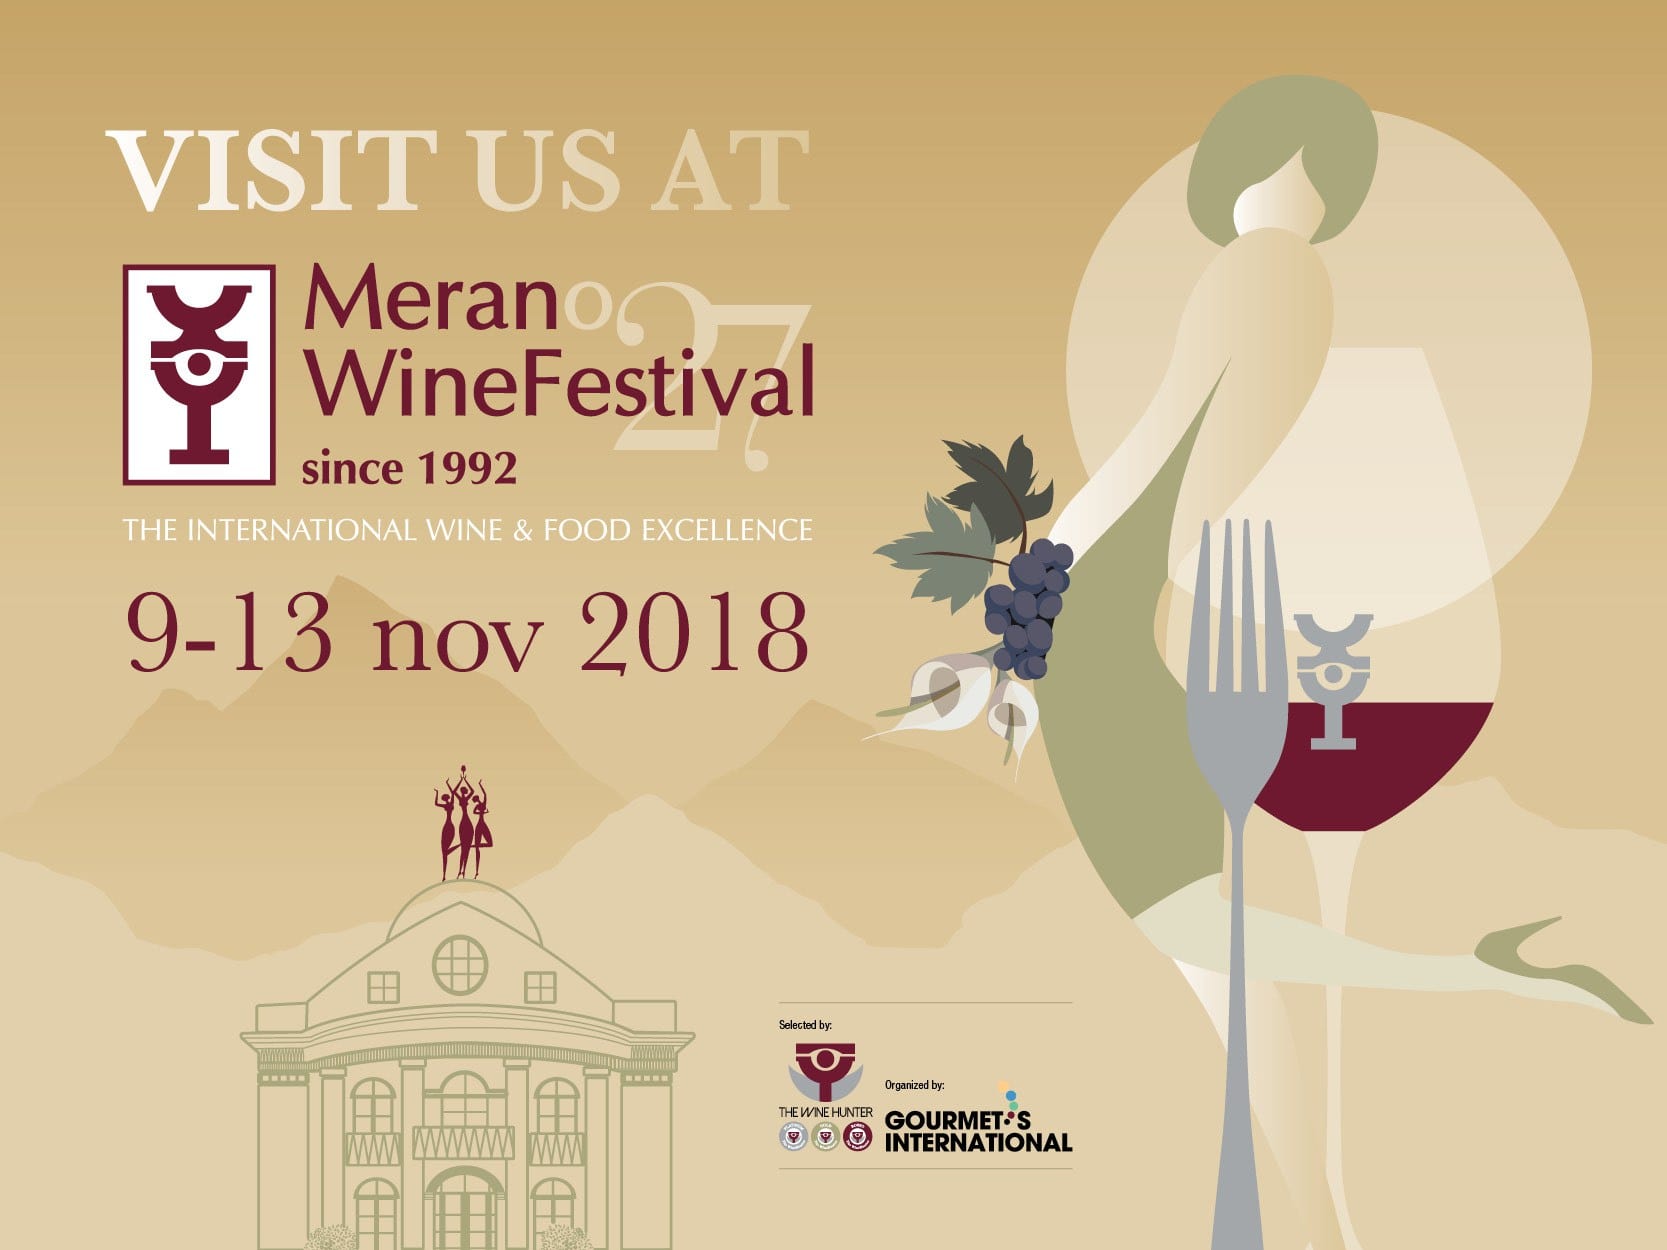 Vado al Merano Wine Festival, tu vuoi venire?